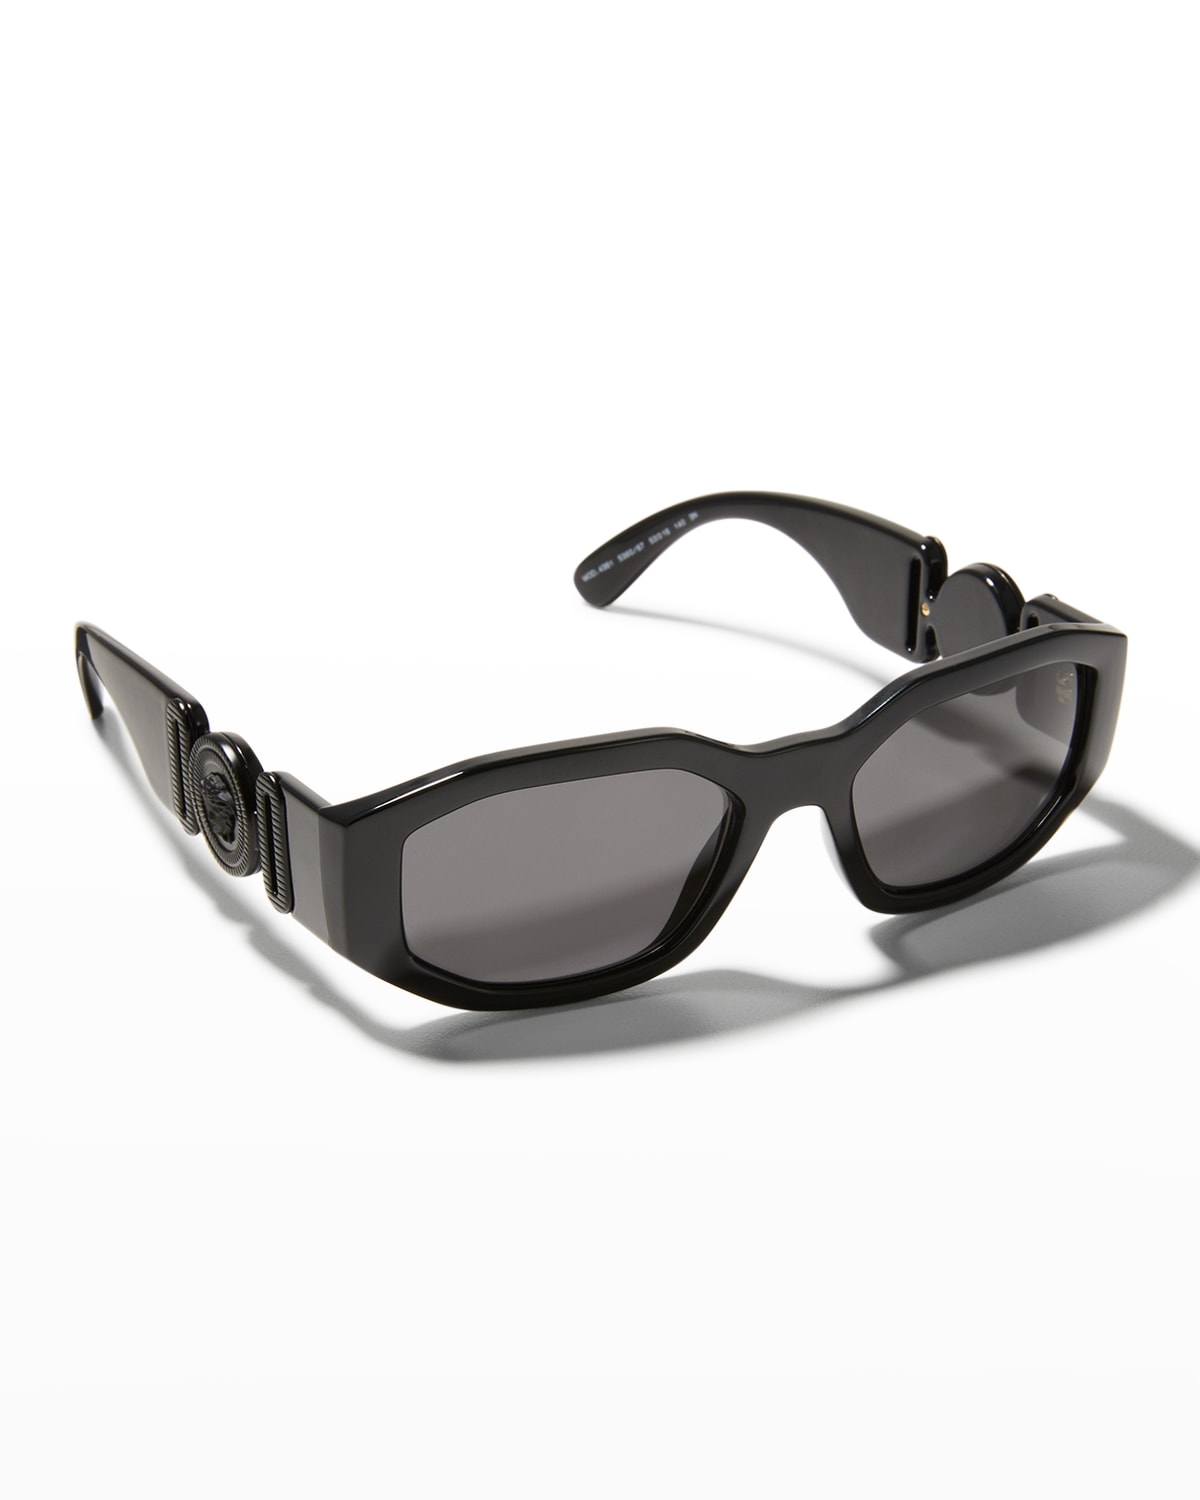 Men's Geometric Propionate Sunglasses